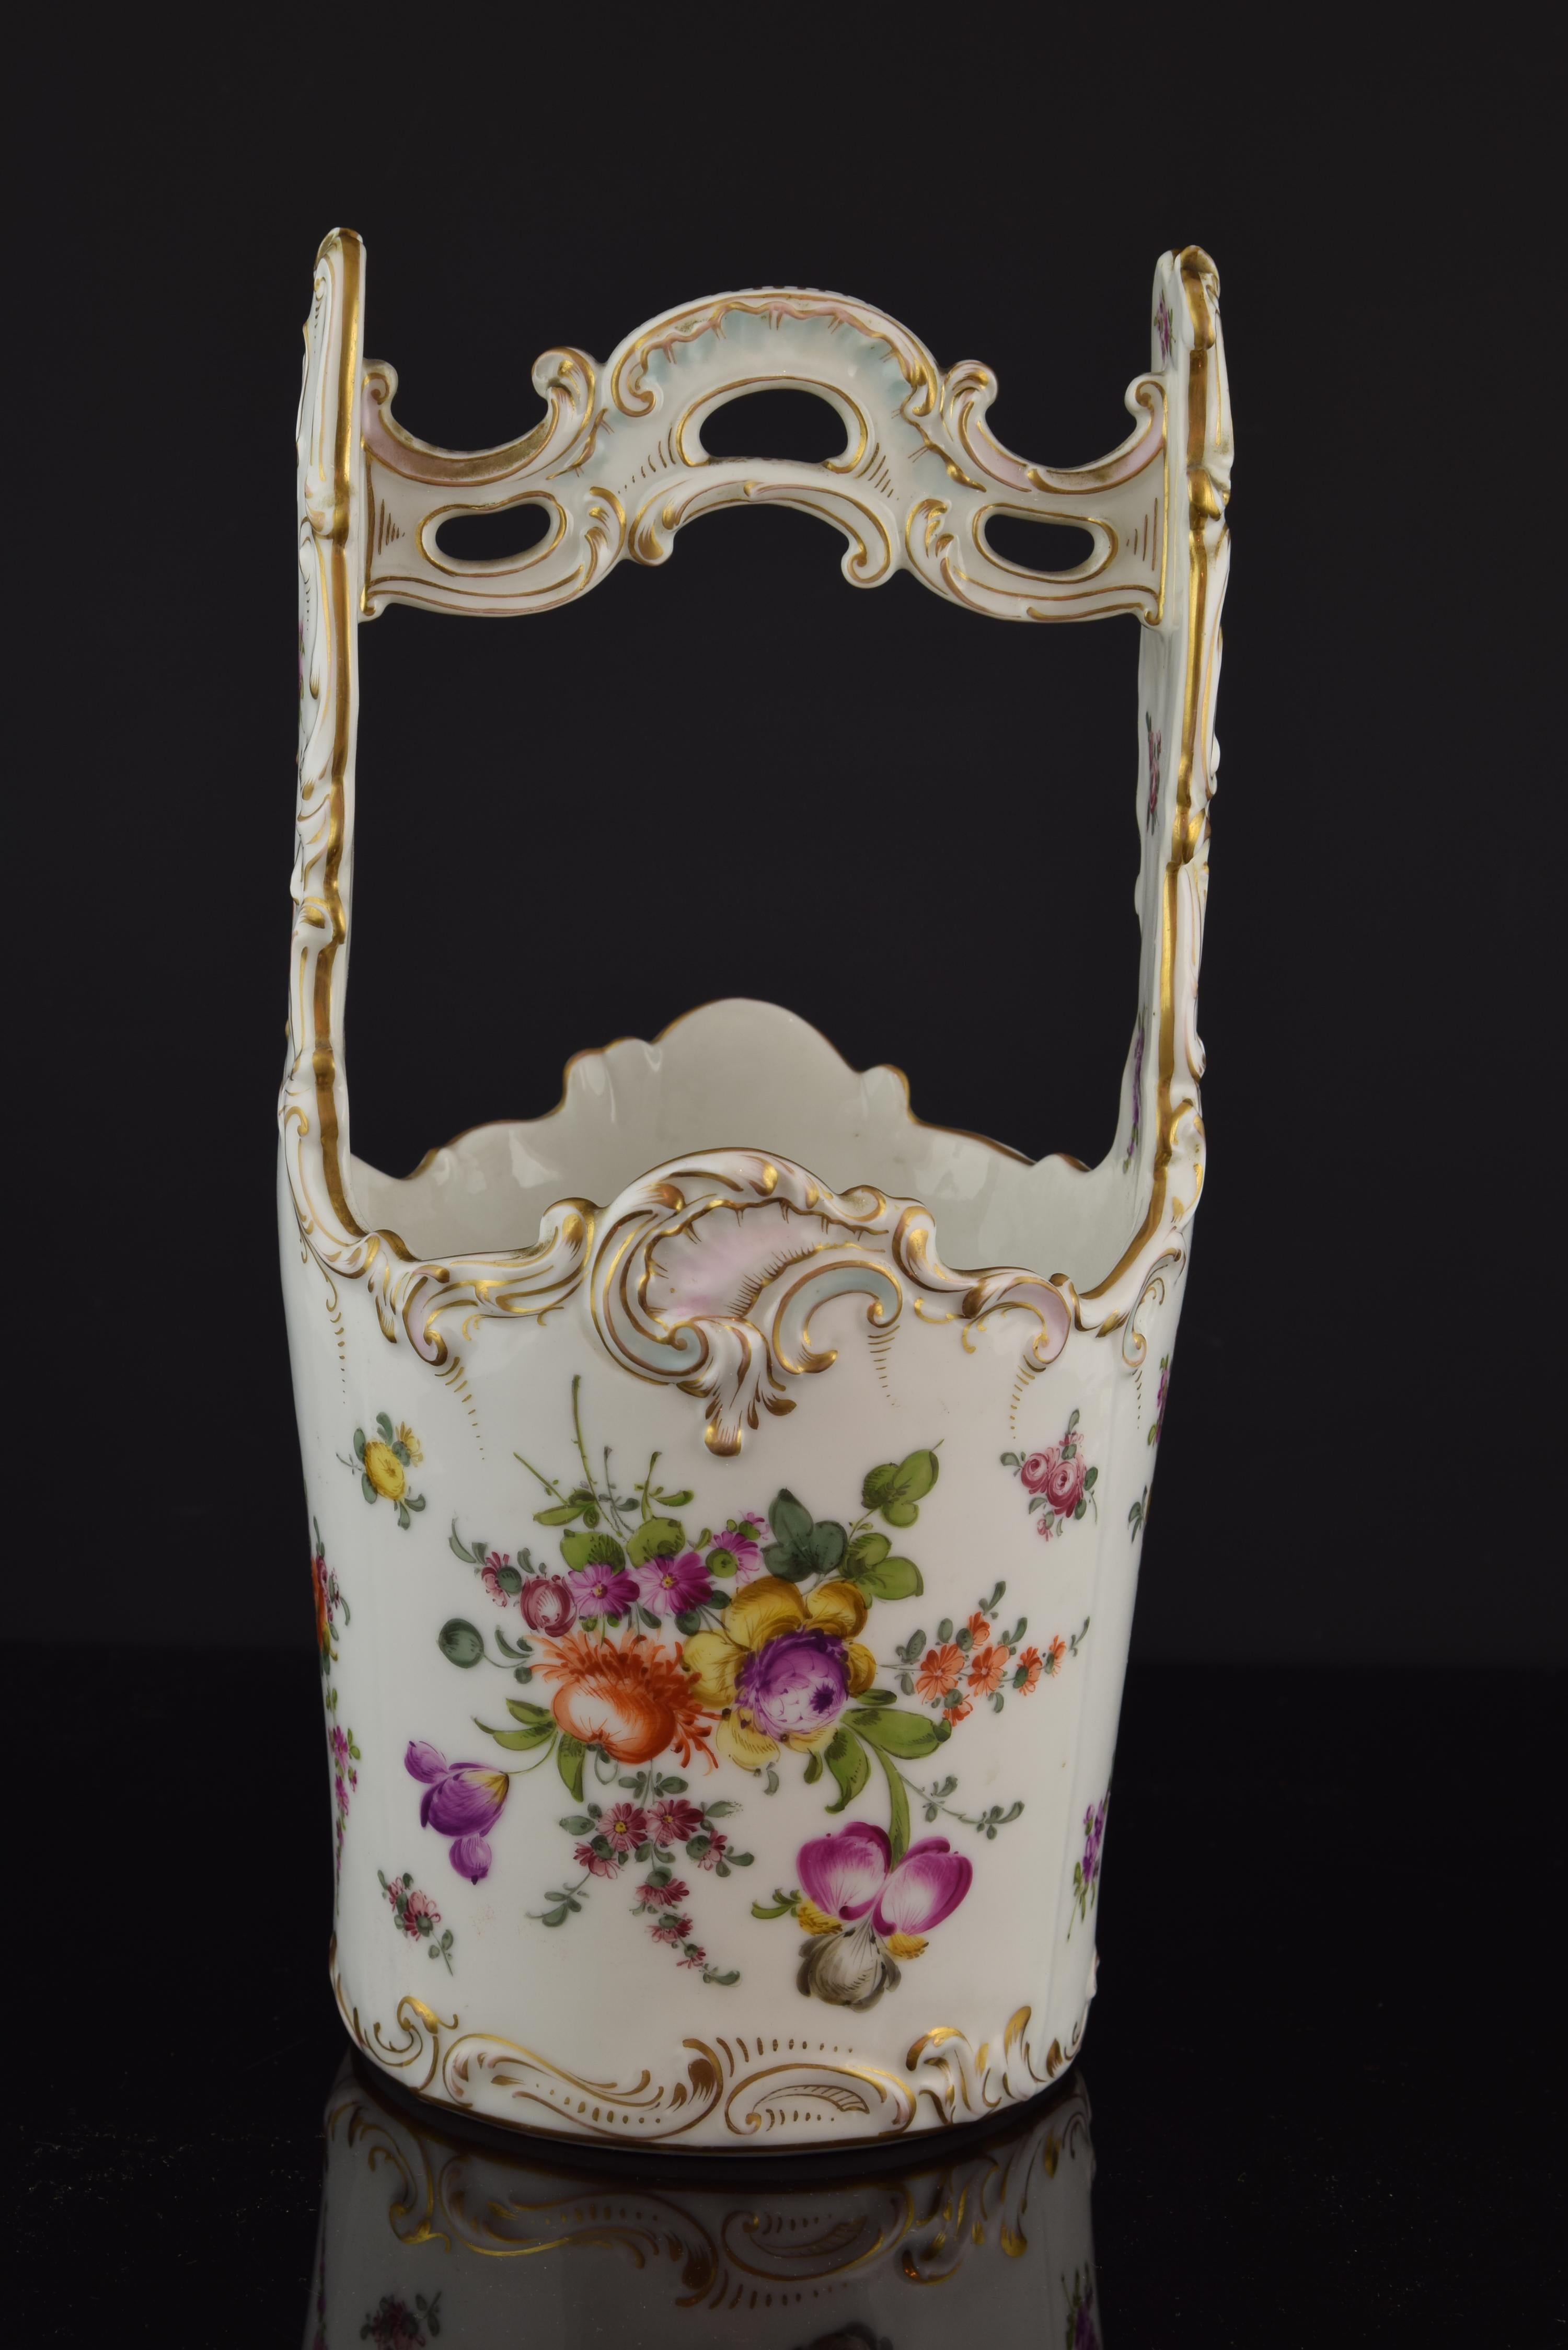 Pièce en porcelaine émaillée avec des détails dorés qui permet de placer des fleurs à l'intérieur. En forme de seau, elle possède une anse décorée de formes inspirées du rococo du XVIIIe siècle, qui sont également présentes sur le bord de la pièce